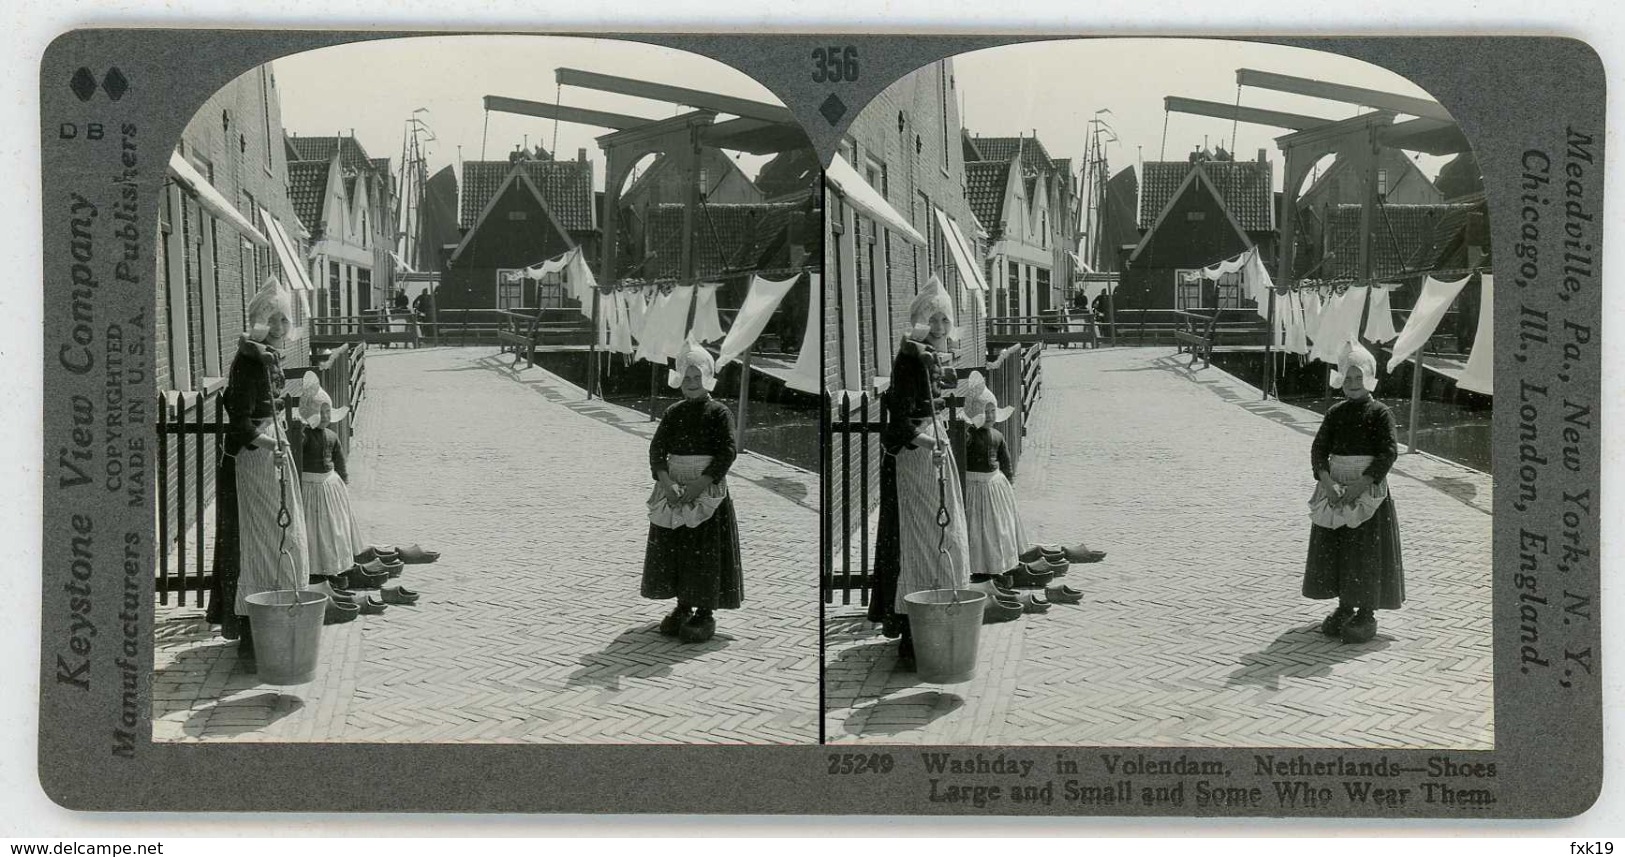 Netherlands ~ VOLENDAM ~ Children On Washday Stereoview 25249 356bx NEAR MINT - Stereoscoop